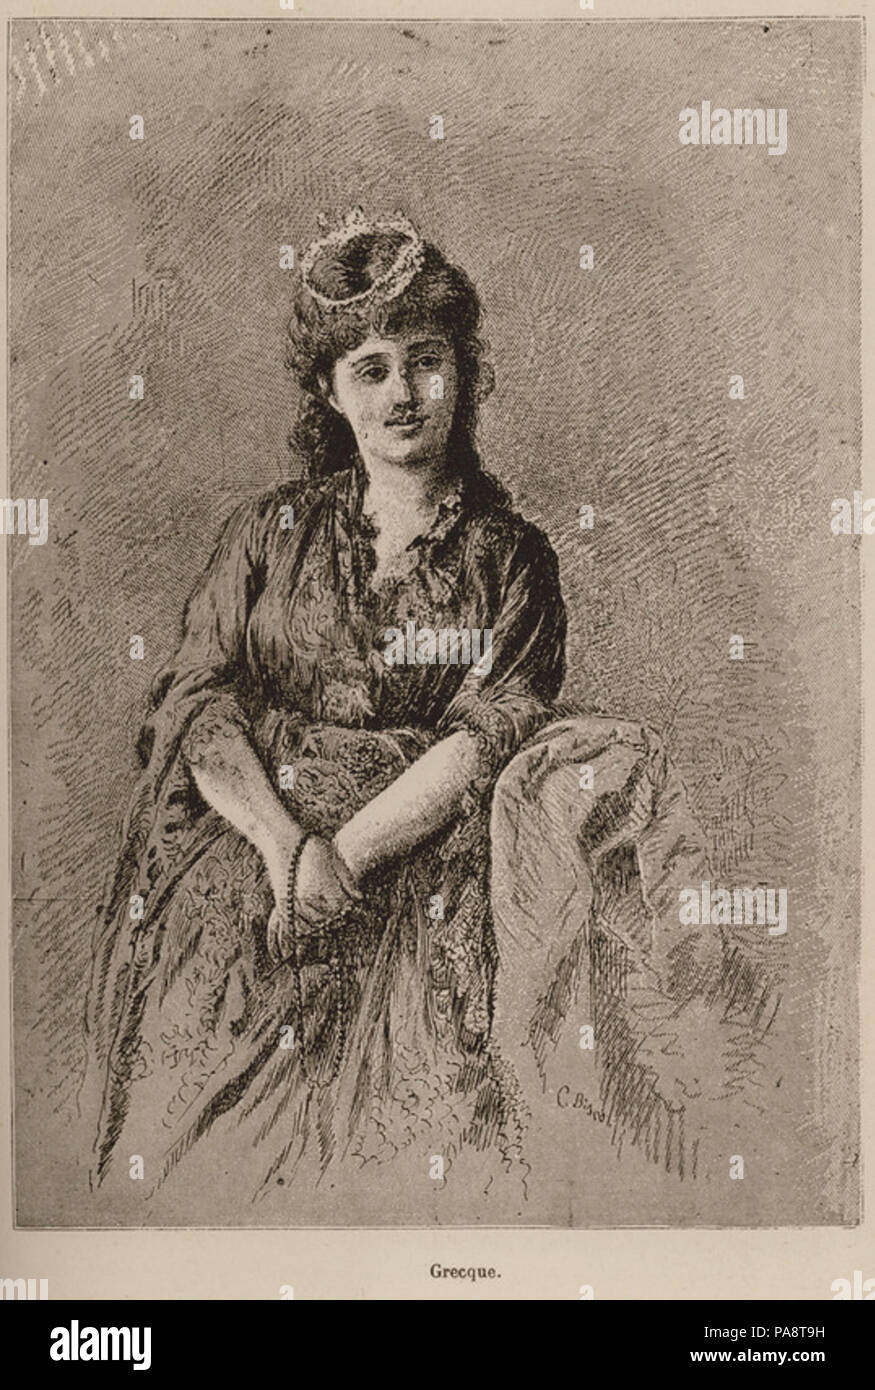 107 Grecque - De Amicis Edmondo - 1883 Stock Photo